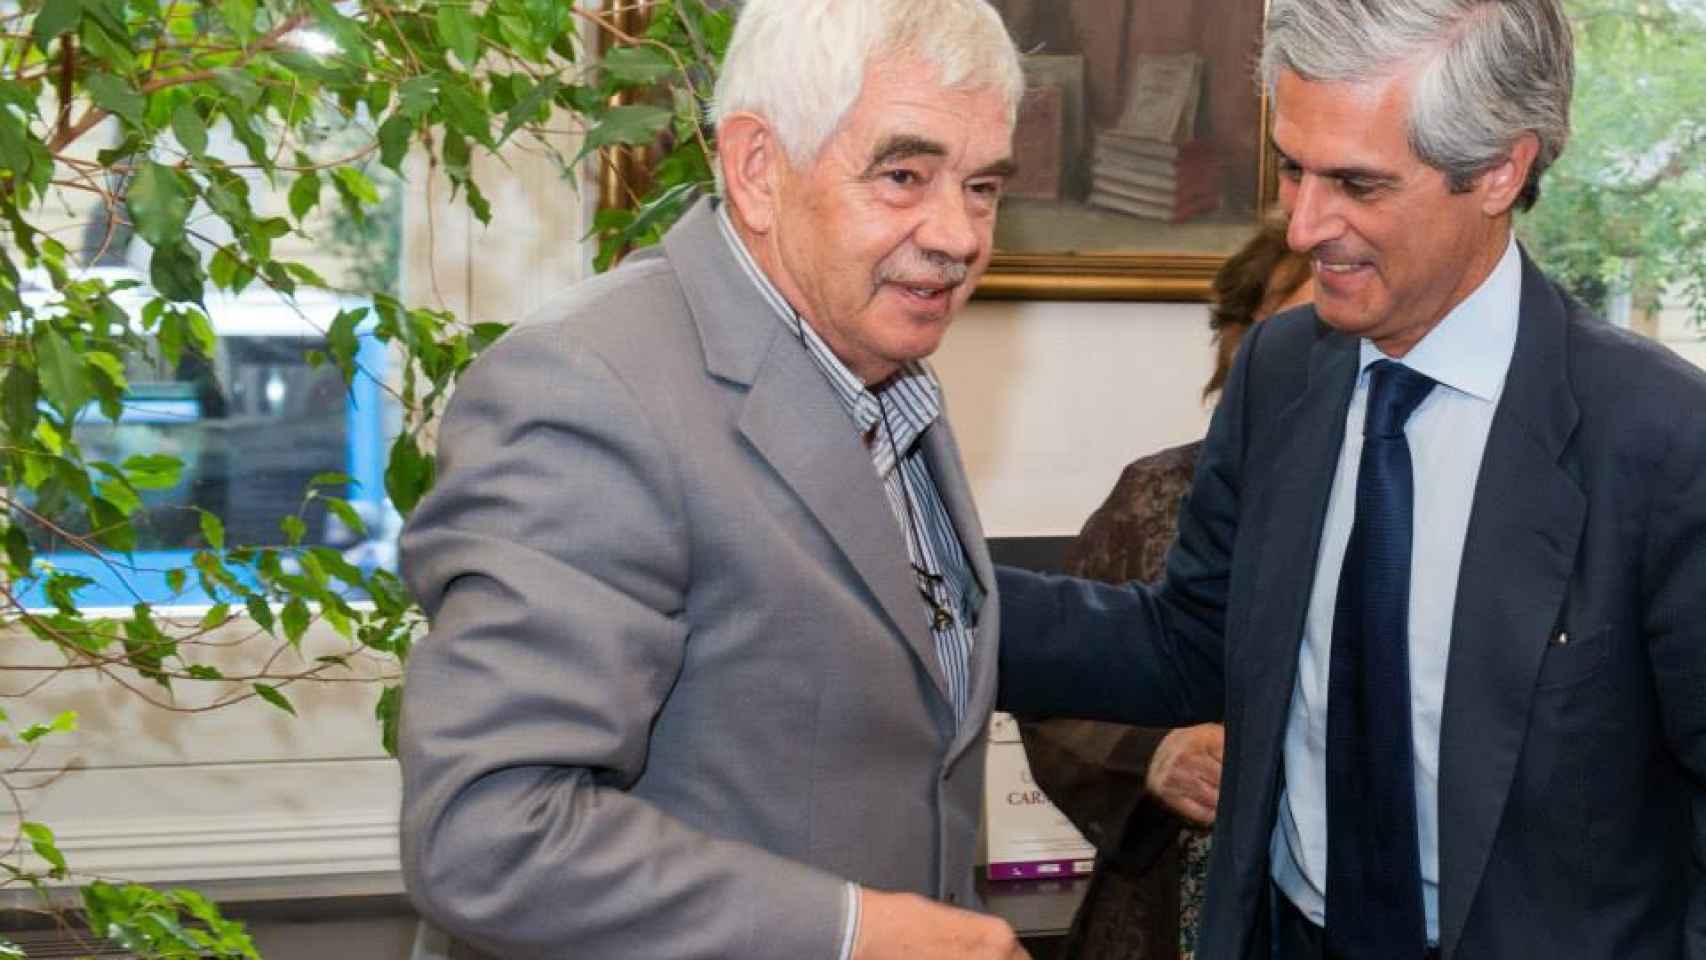 Pasqual Maragall junto a Adolfo Suárez Illana en un acto ante los medios de comunicación.